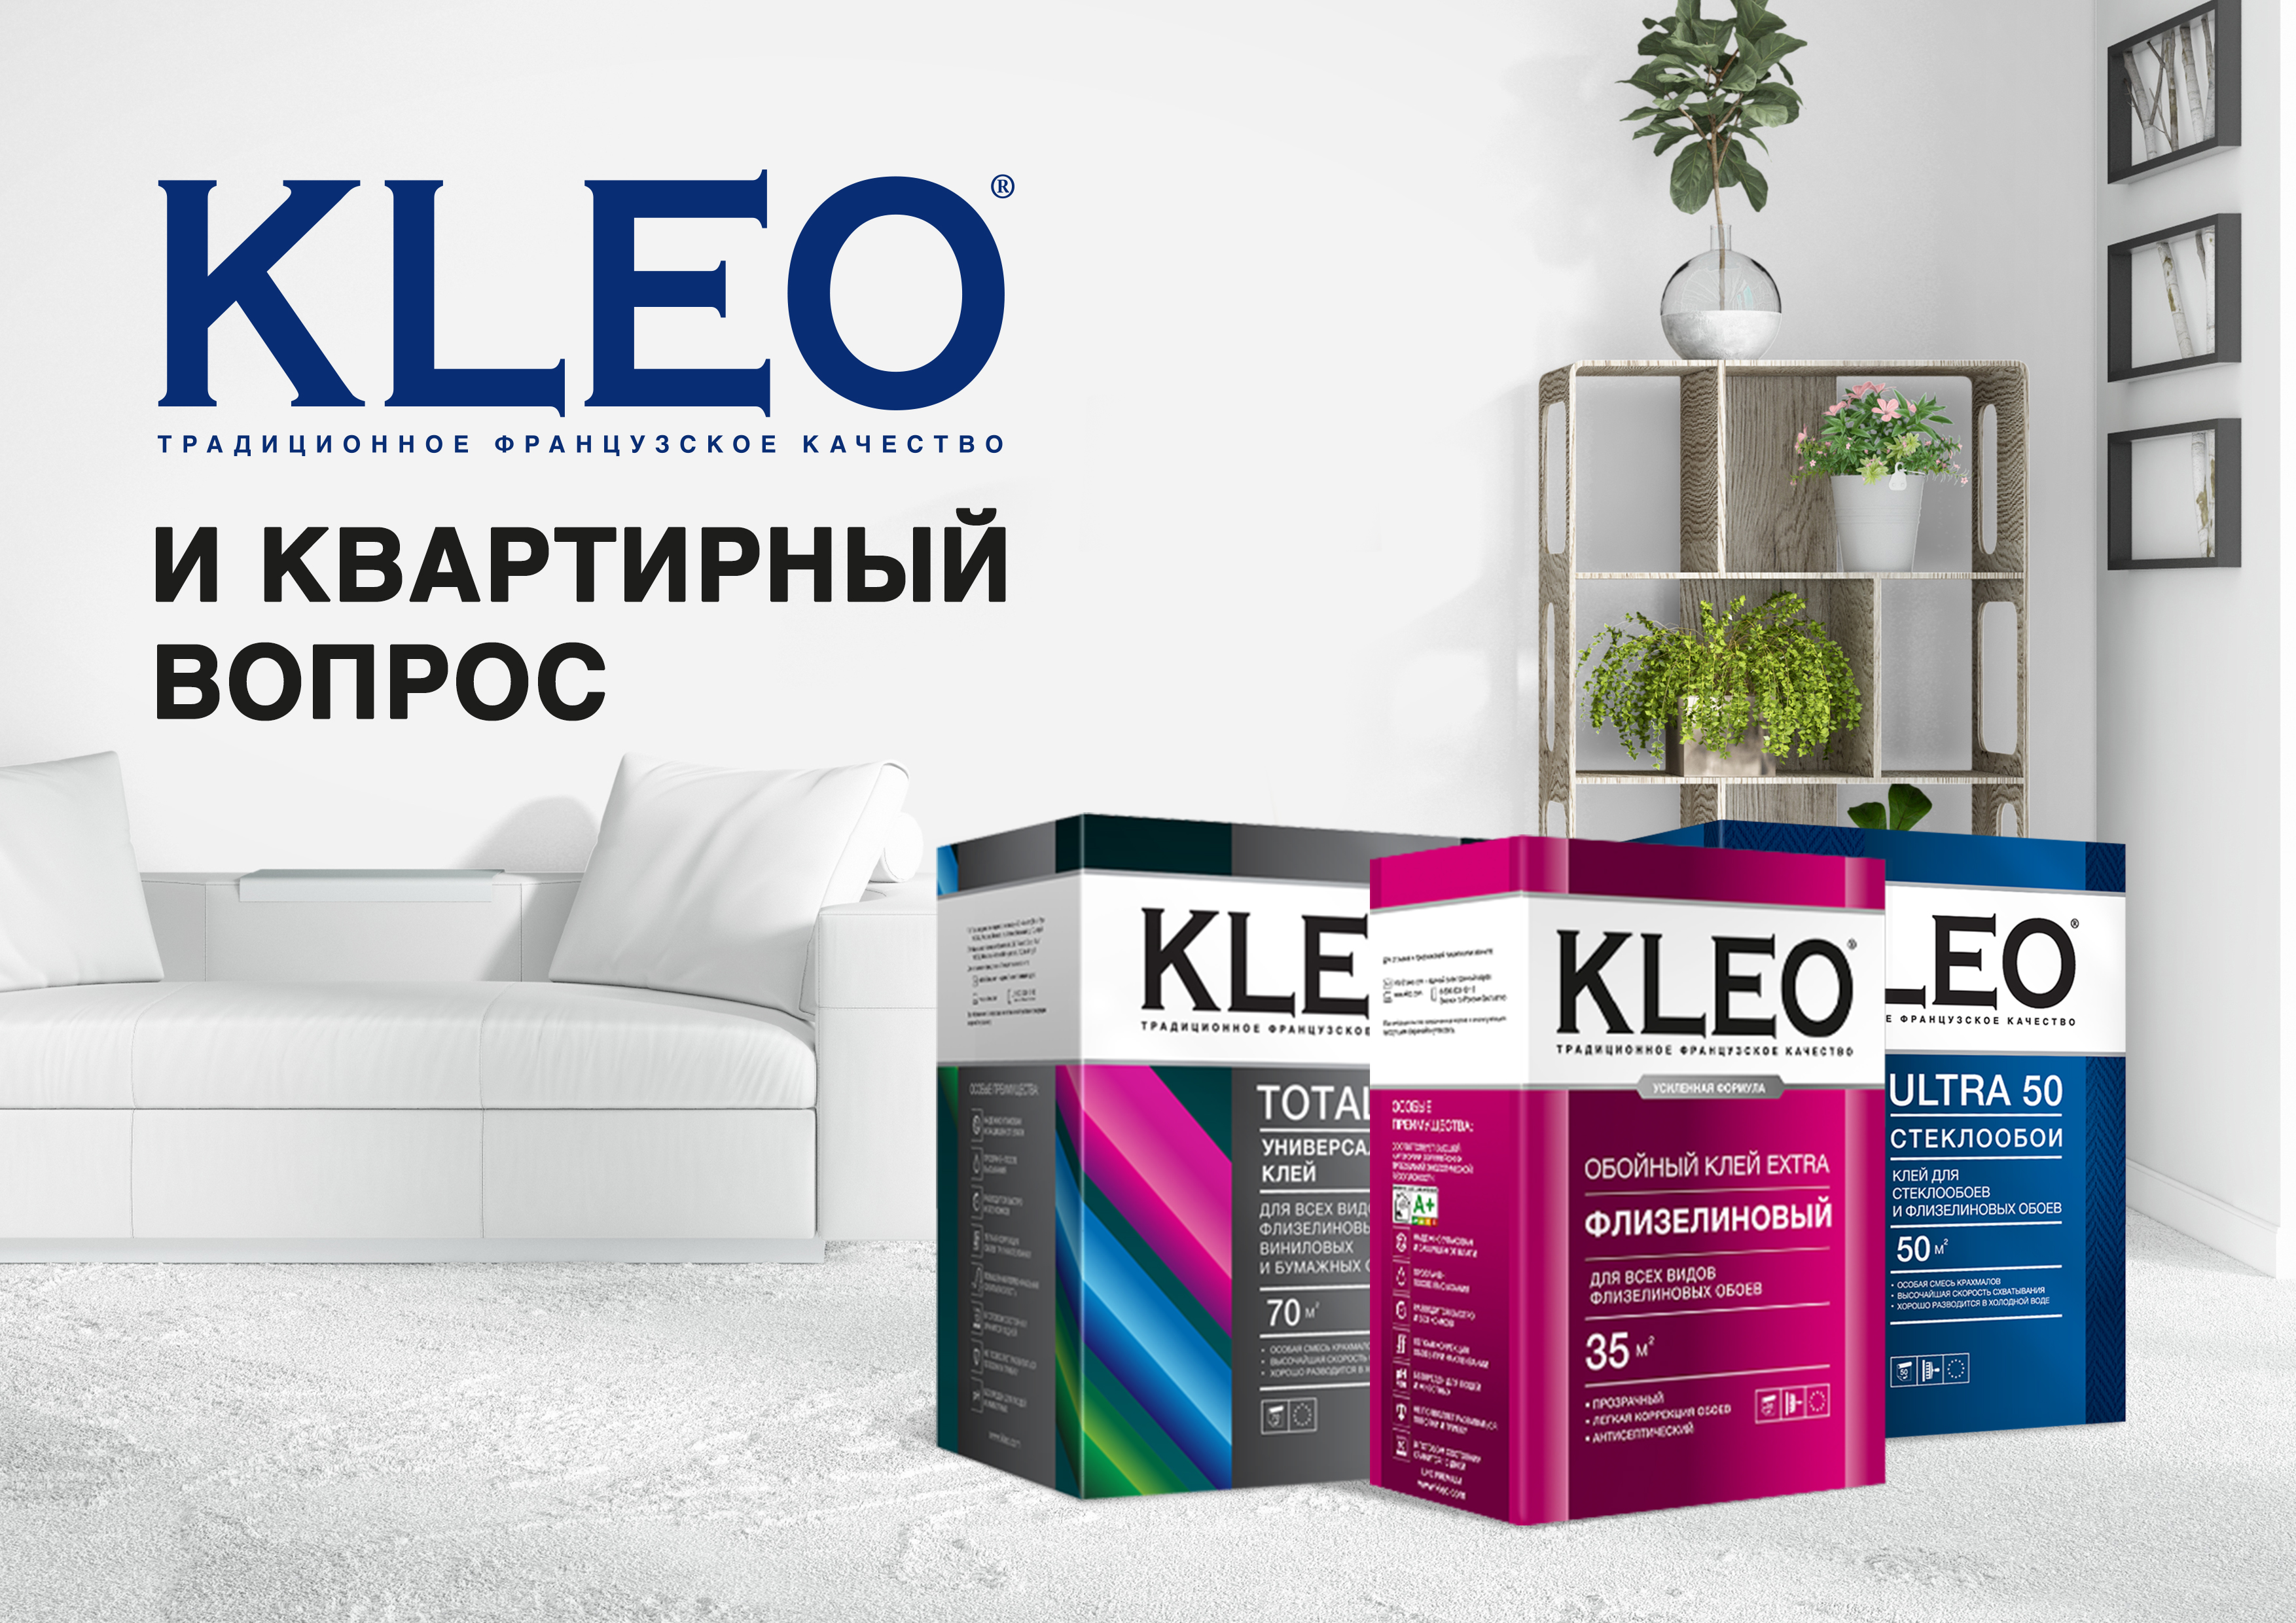 KLEO - спонсор передачи “Квартирный вопрос” на НТВ